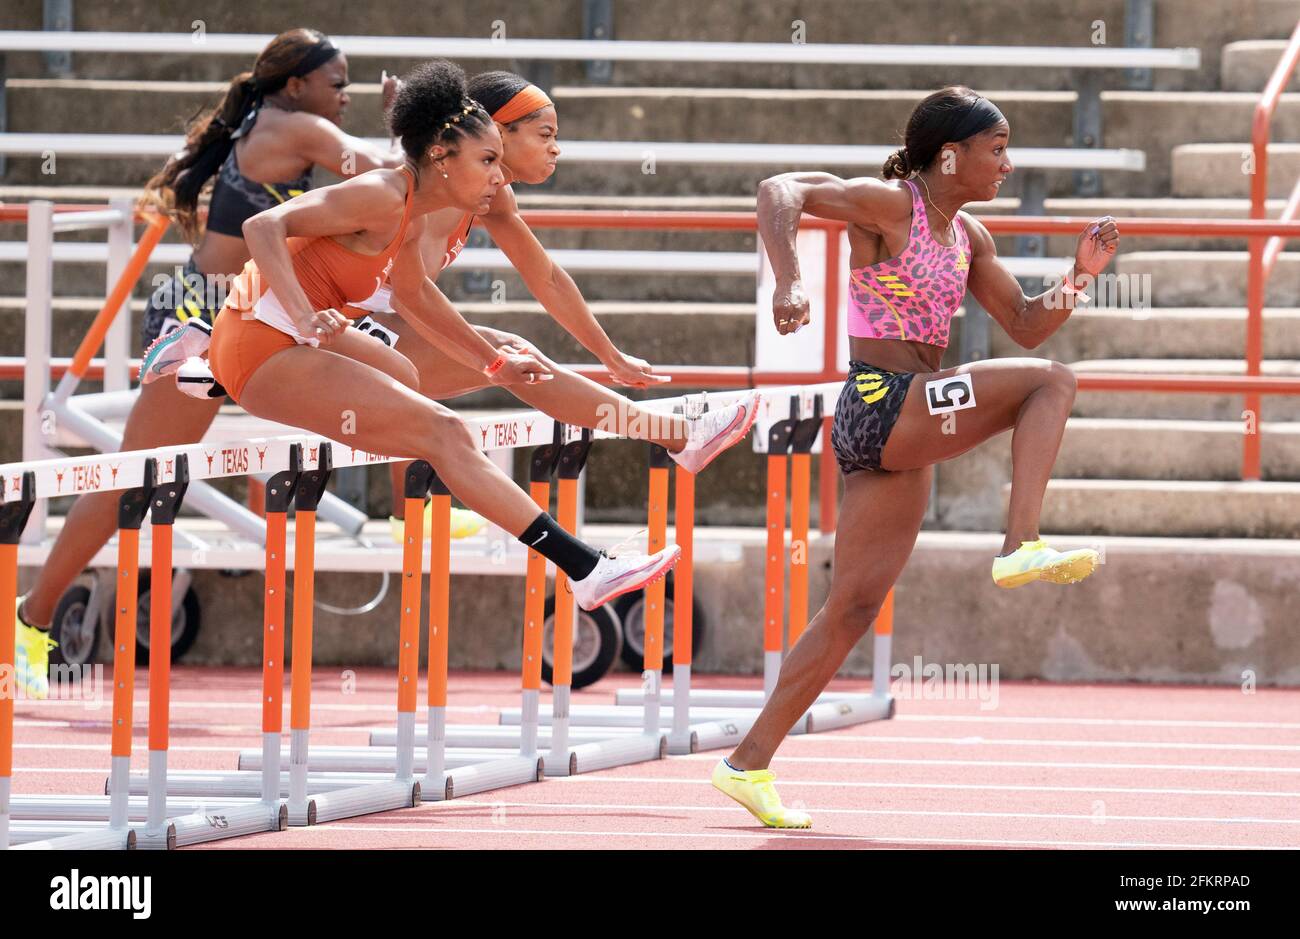 Austin, Texas, Estados Unidos. 01st de mayo de 2021: El atleta de élite  Keni Harrison del equipo Adidas lidera el pack compitiendo en los  obstáculos de 100 metros femeninos en el Texas